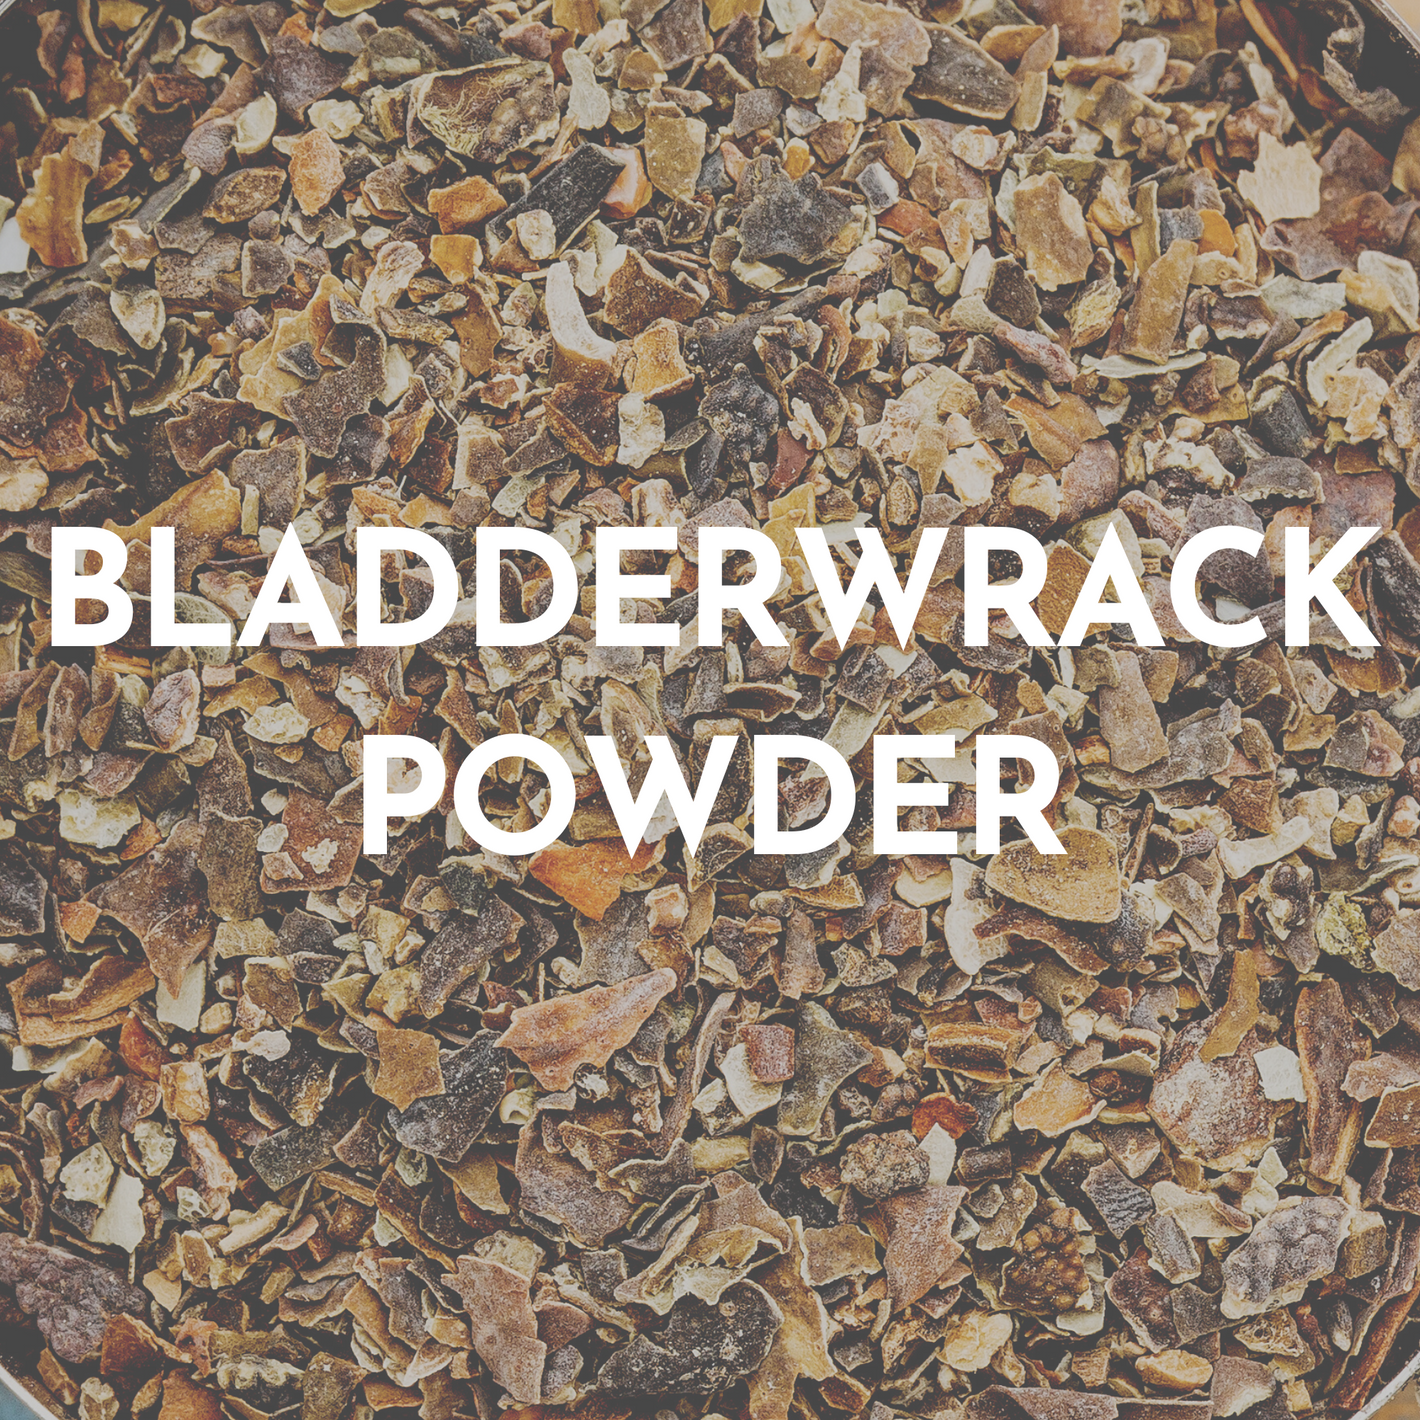 bladderwrack powder